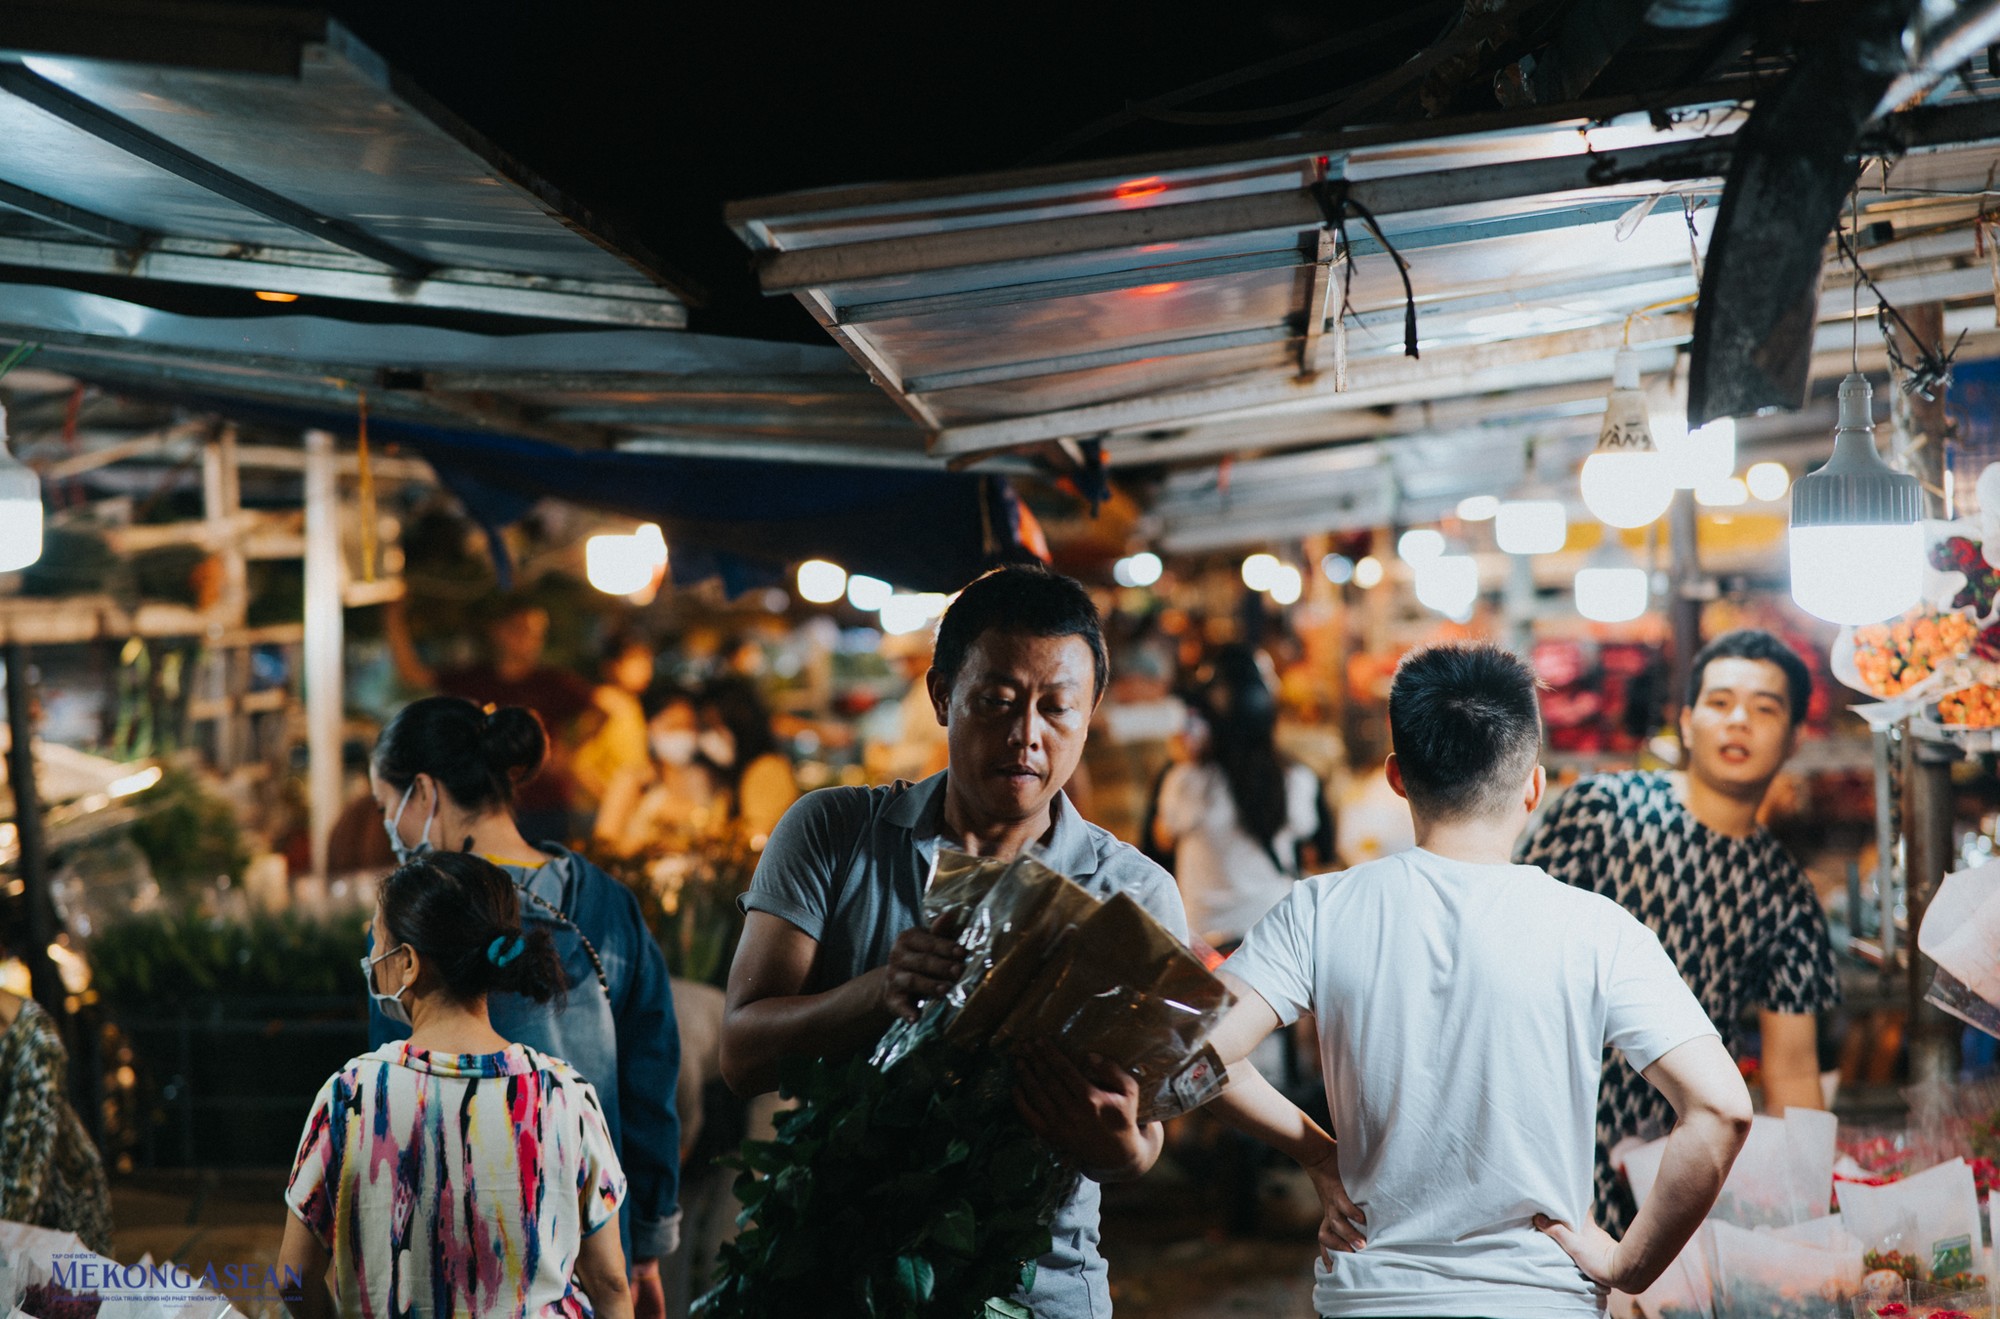 Phía trong chợ có những gian hàng vẫn dùng mái tôn tạo nên những góc ảnh hoài cổ, khiến chợ hoa Quảng An đang nổi tiếng với những người đam mê chụp ảnh.